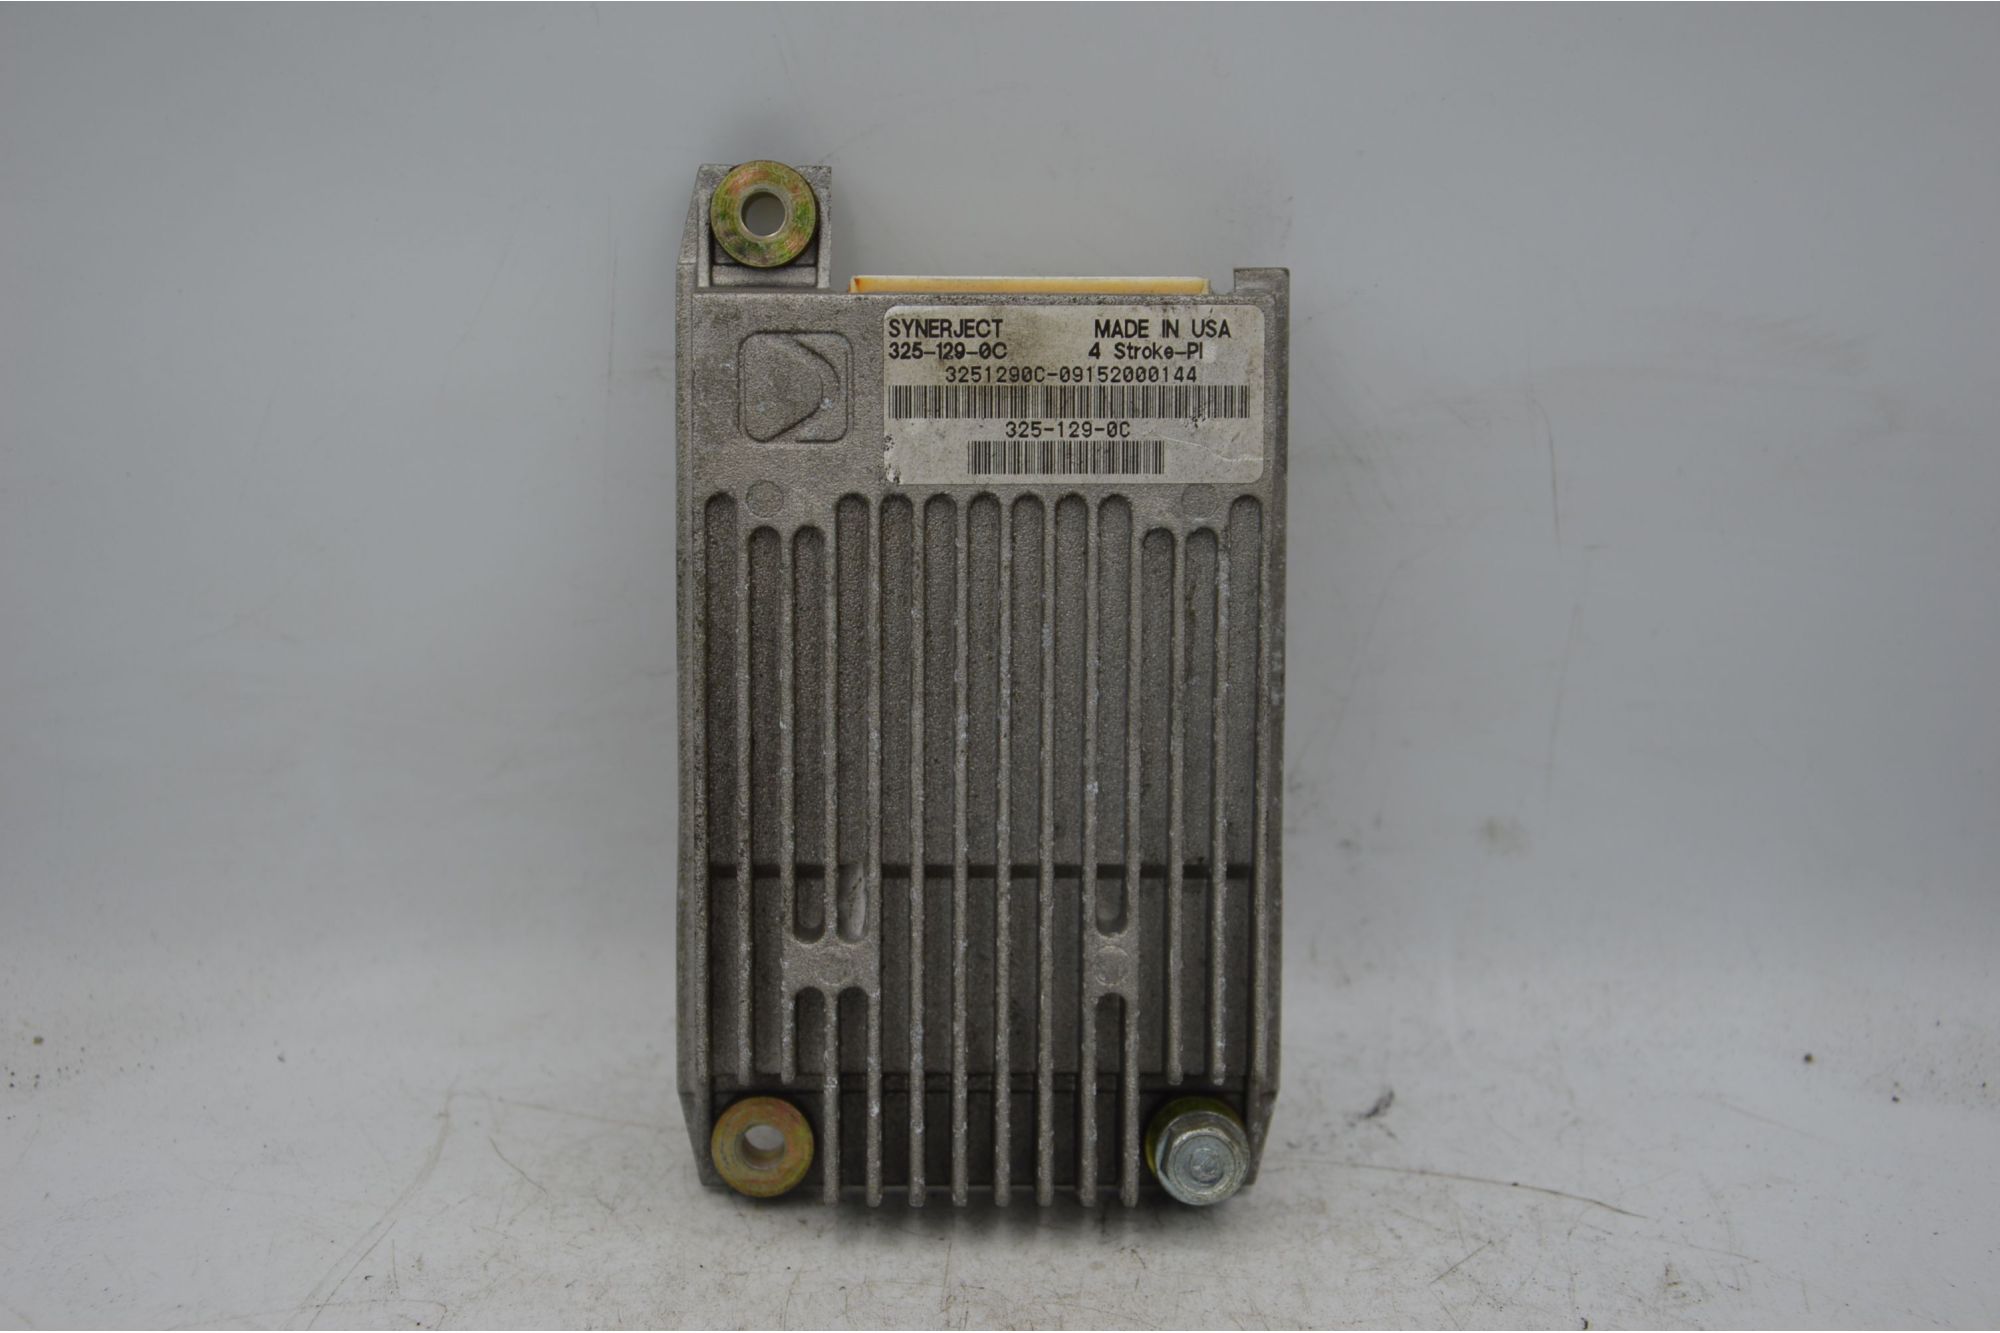 Centralina Motore ECU Sym HD 200 dal 2006 al 2011 COD 325-129-0C  1706097257059